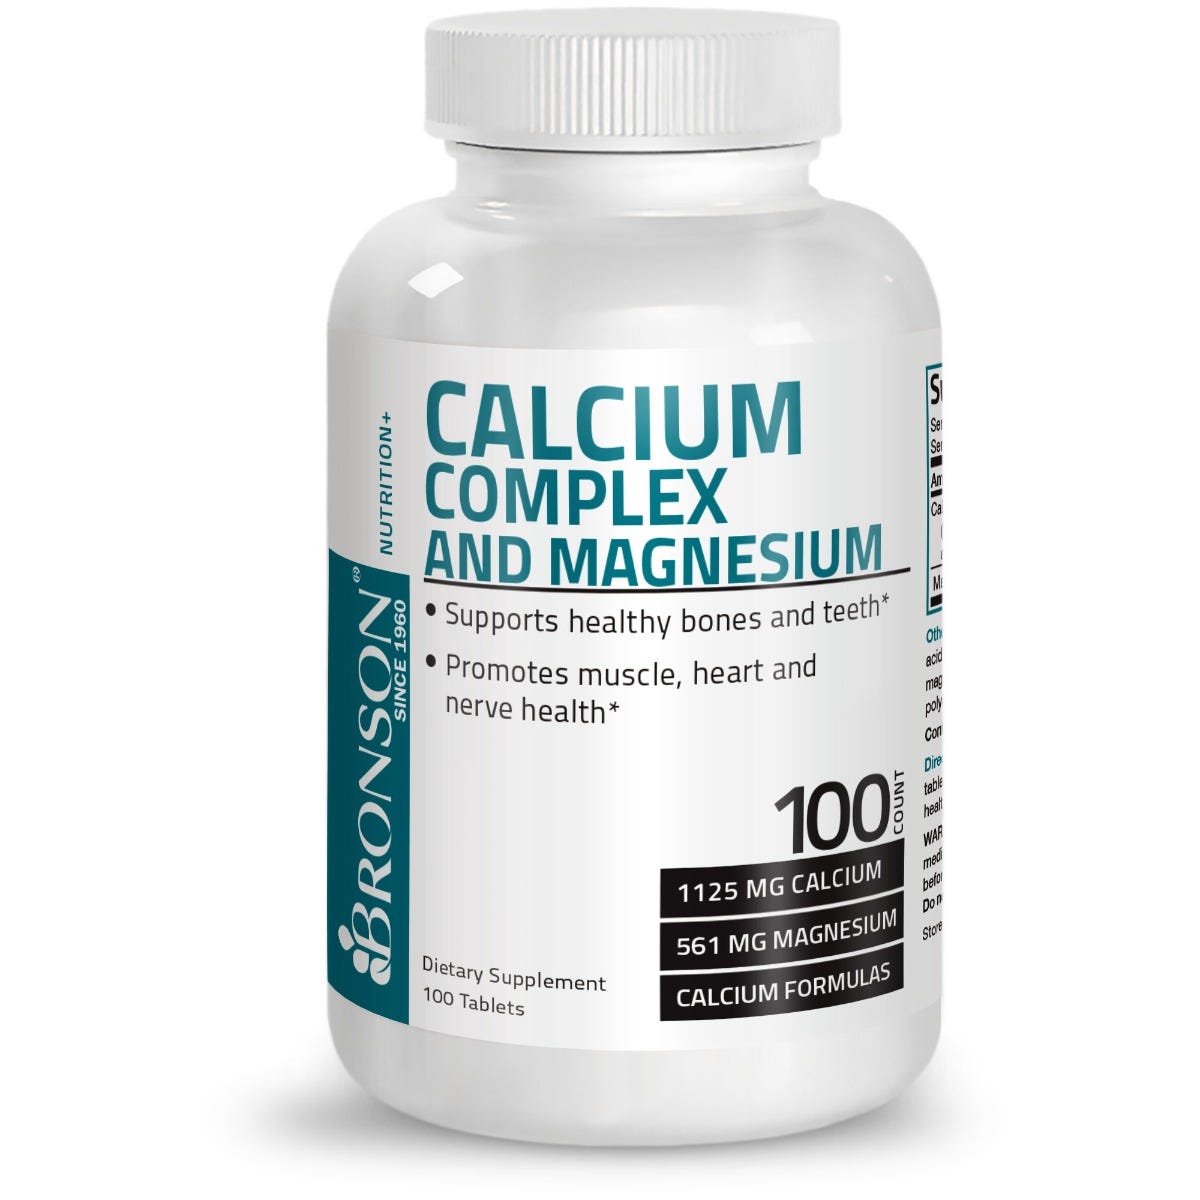 Calcium Complex with Magnesium view 7 of 6